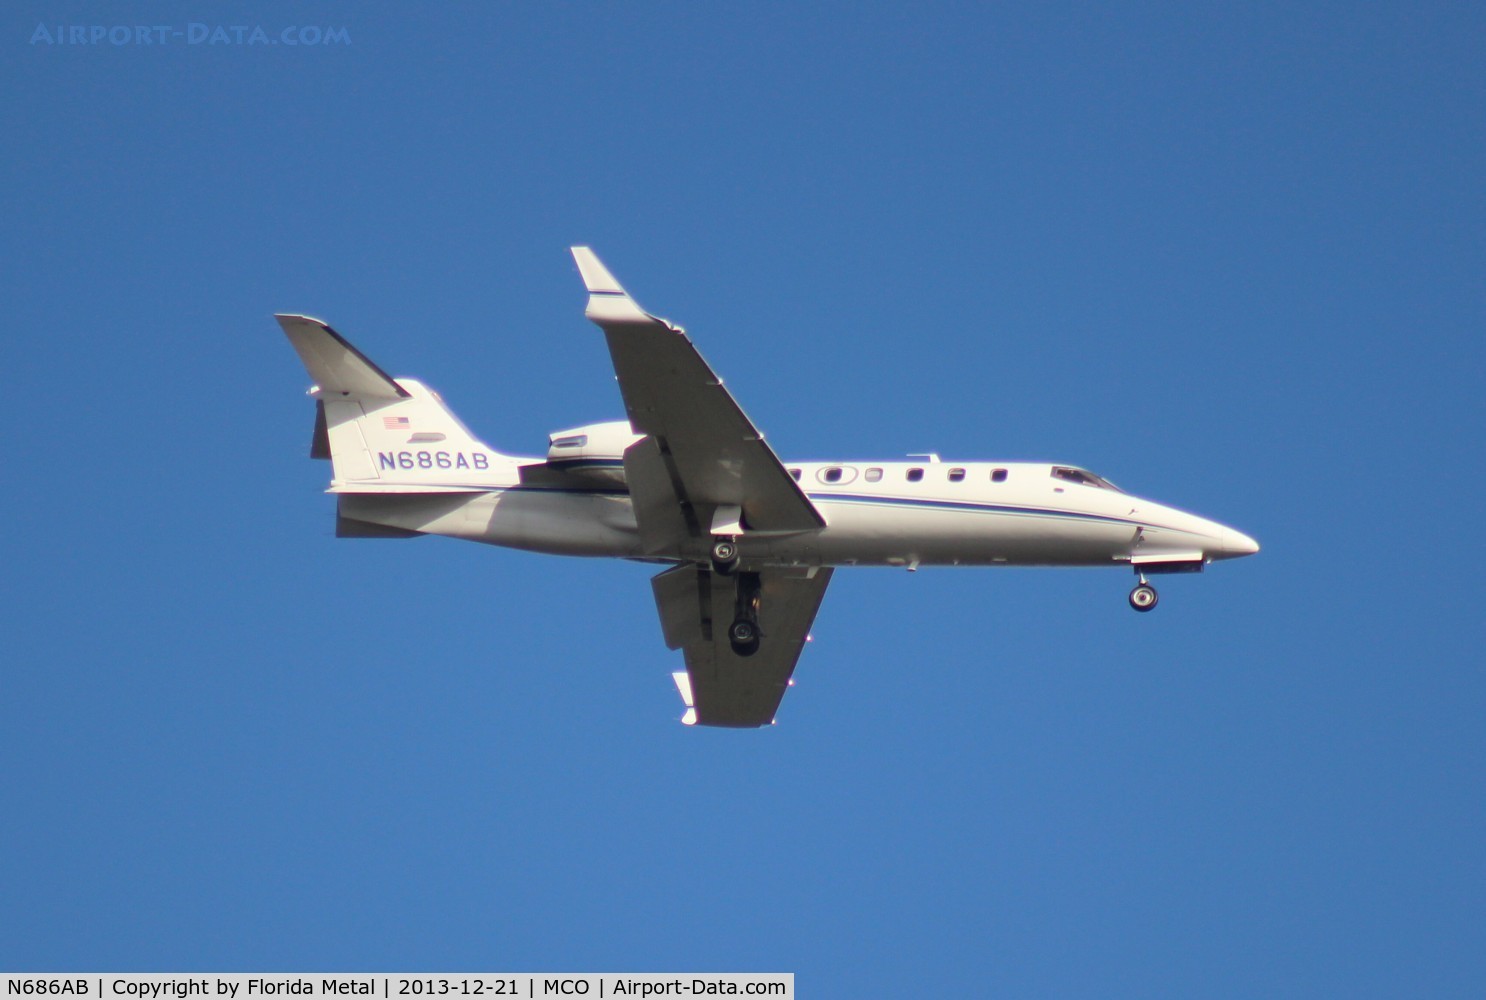 N686AB, 2002 Learjet Inc 31A C/N 239, Lear 31A